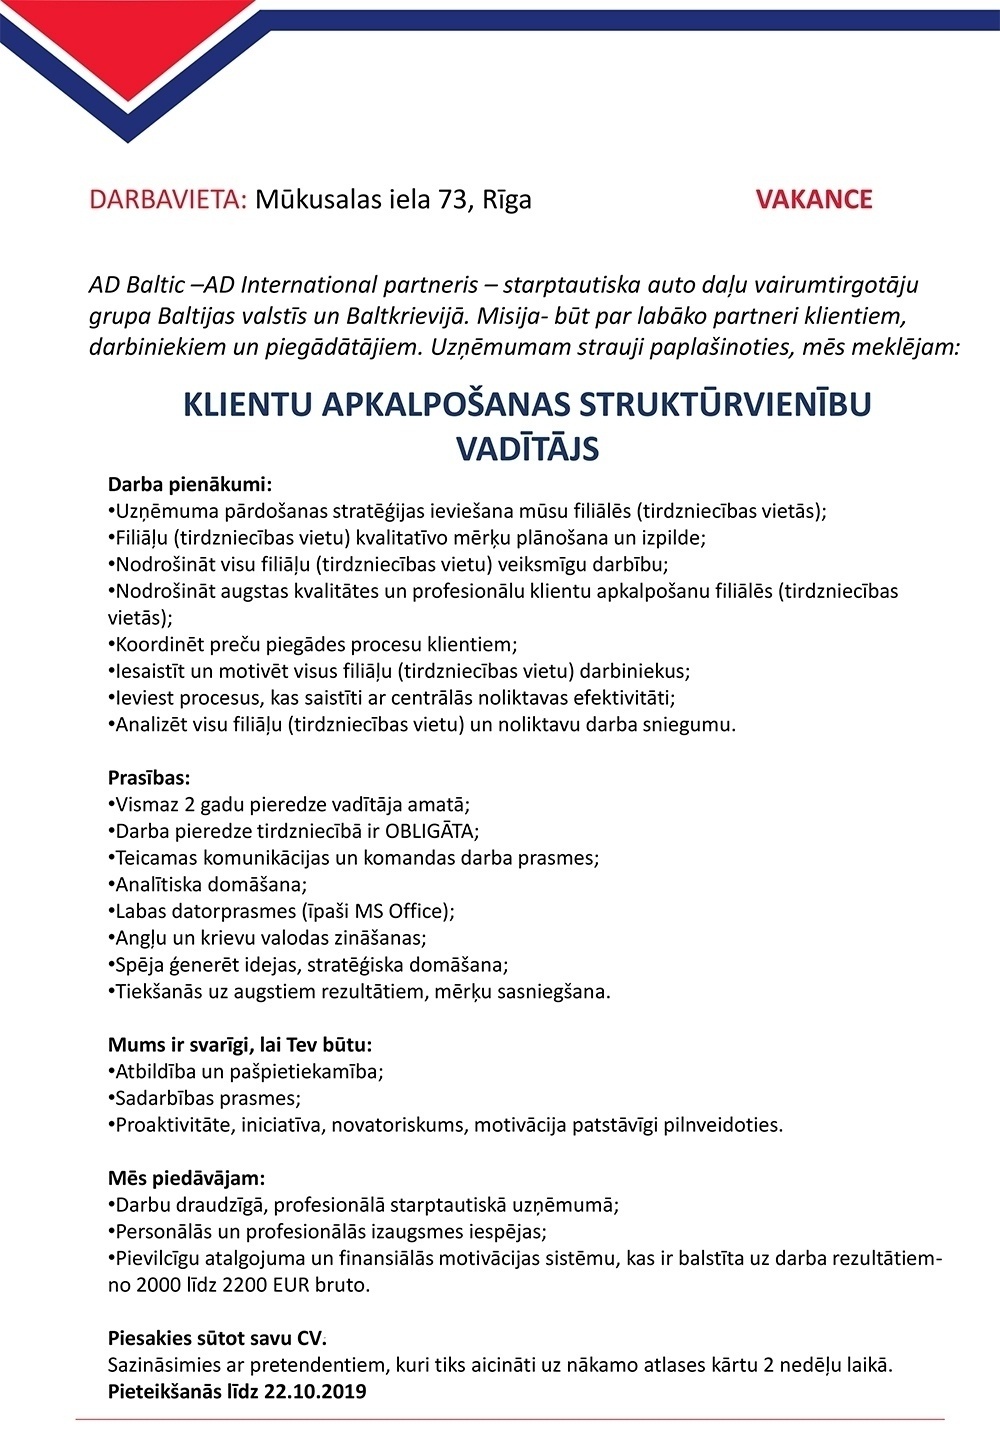 AD Baltic, SIA Klientu apkalpošanas struktūrvienību vadītājs/-a